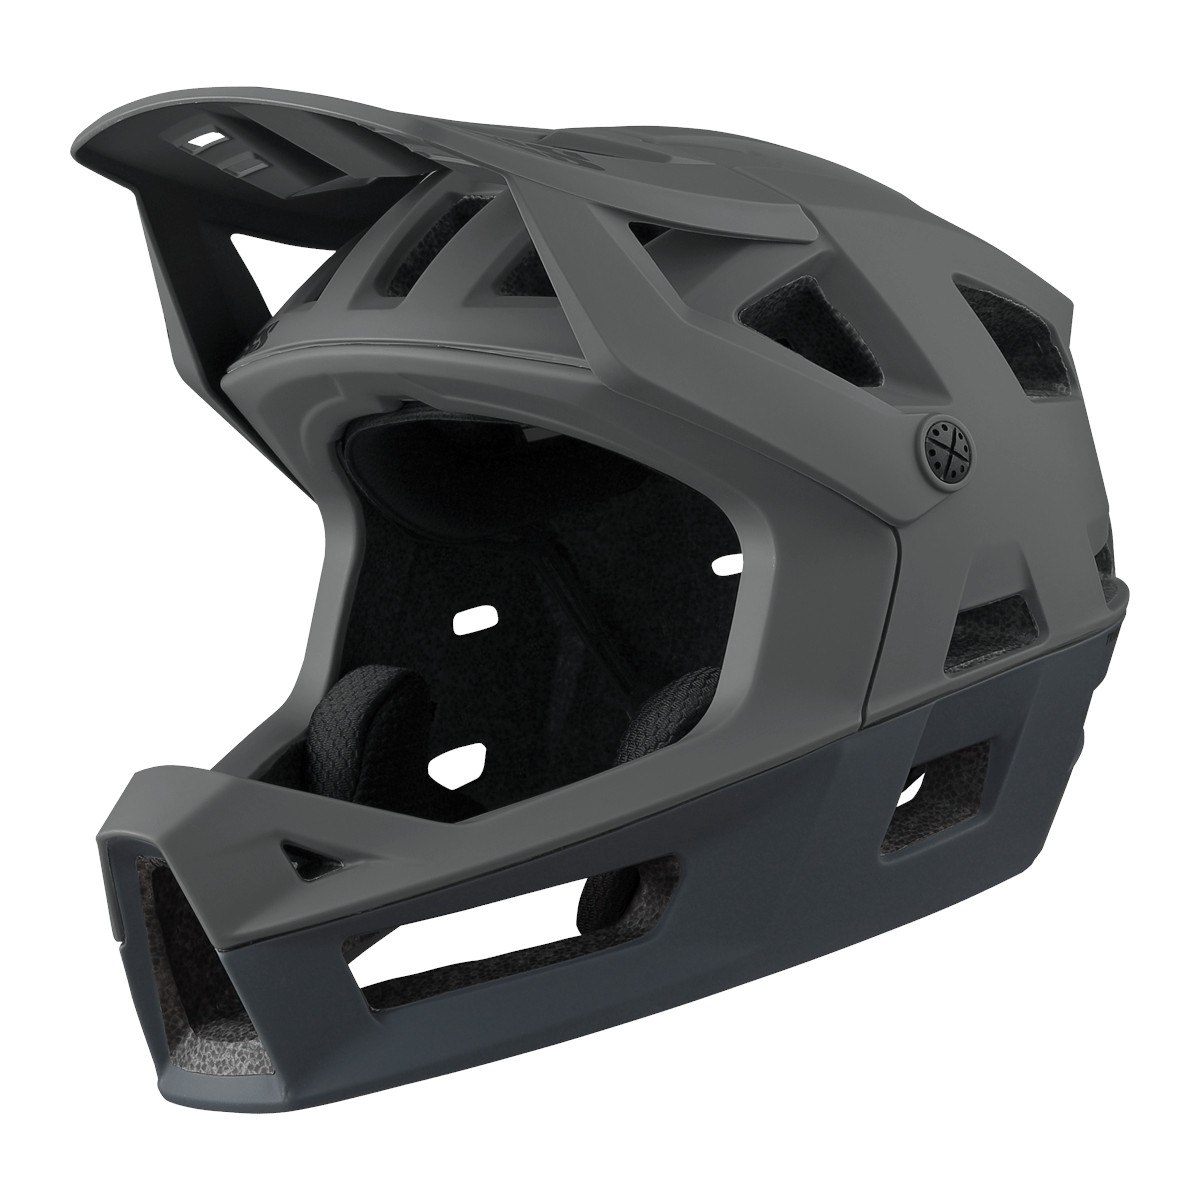 Produktbild von iXS Trigger Fullface Helm - graphit